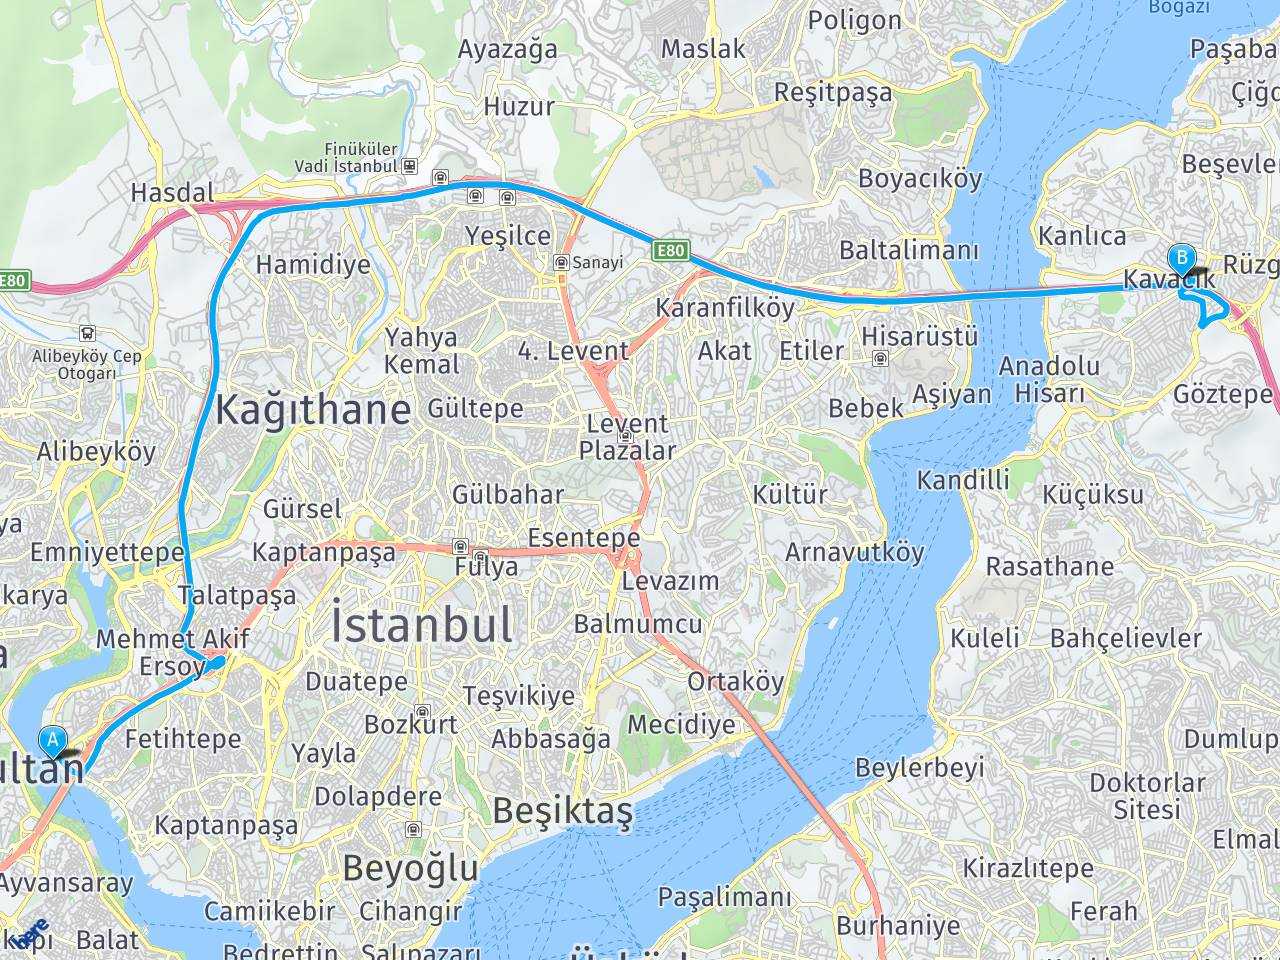 Beykoz Kavacik Yol Tarifi Istanbul Sutluce Beykoz Kavacik Nasil Gidilir Beykoz Kavacik Nerede